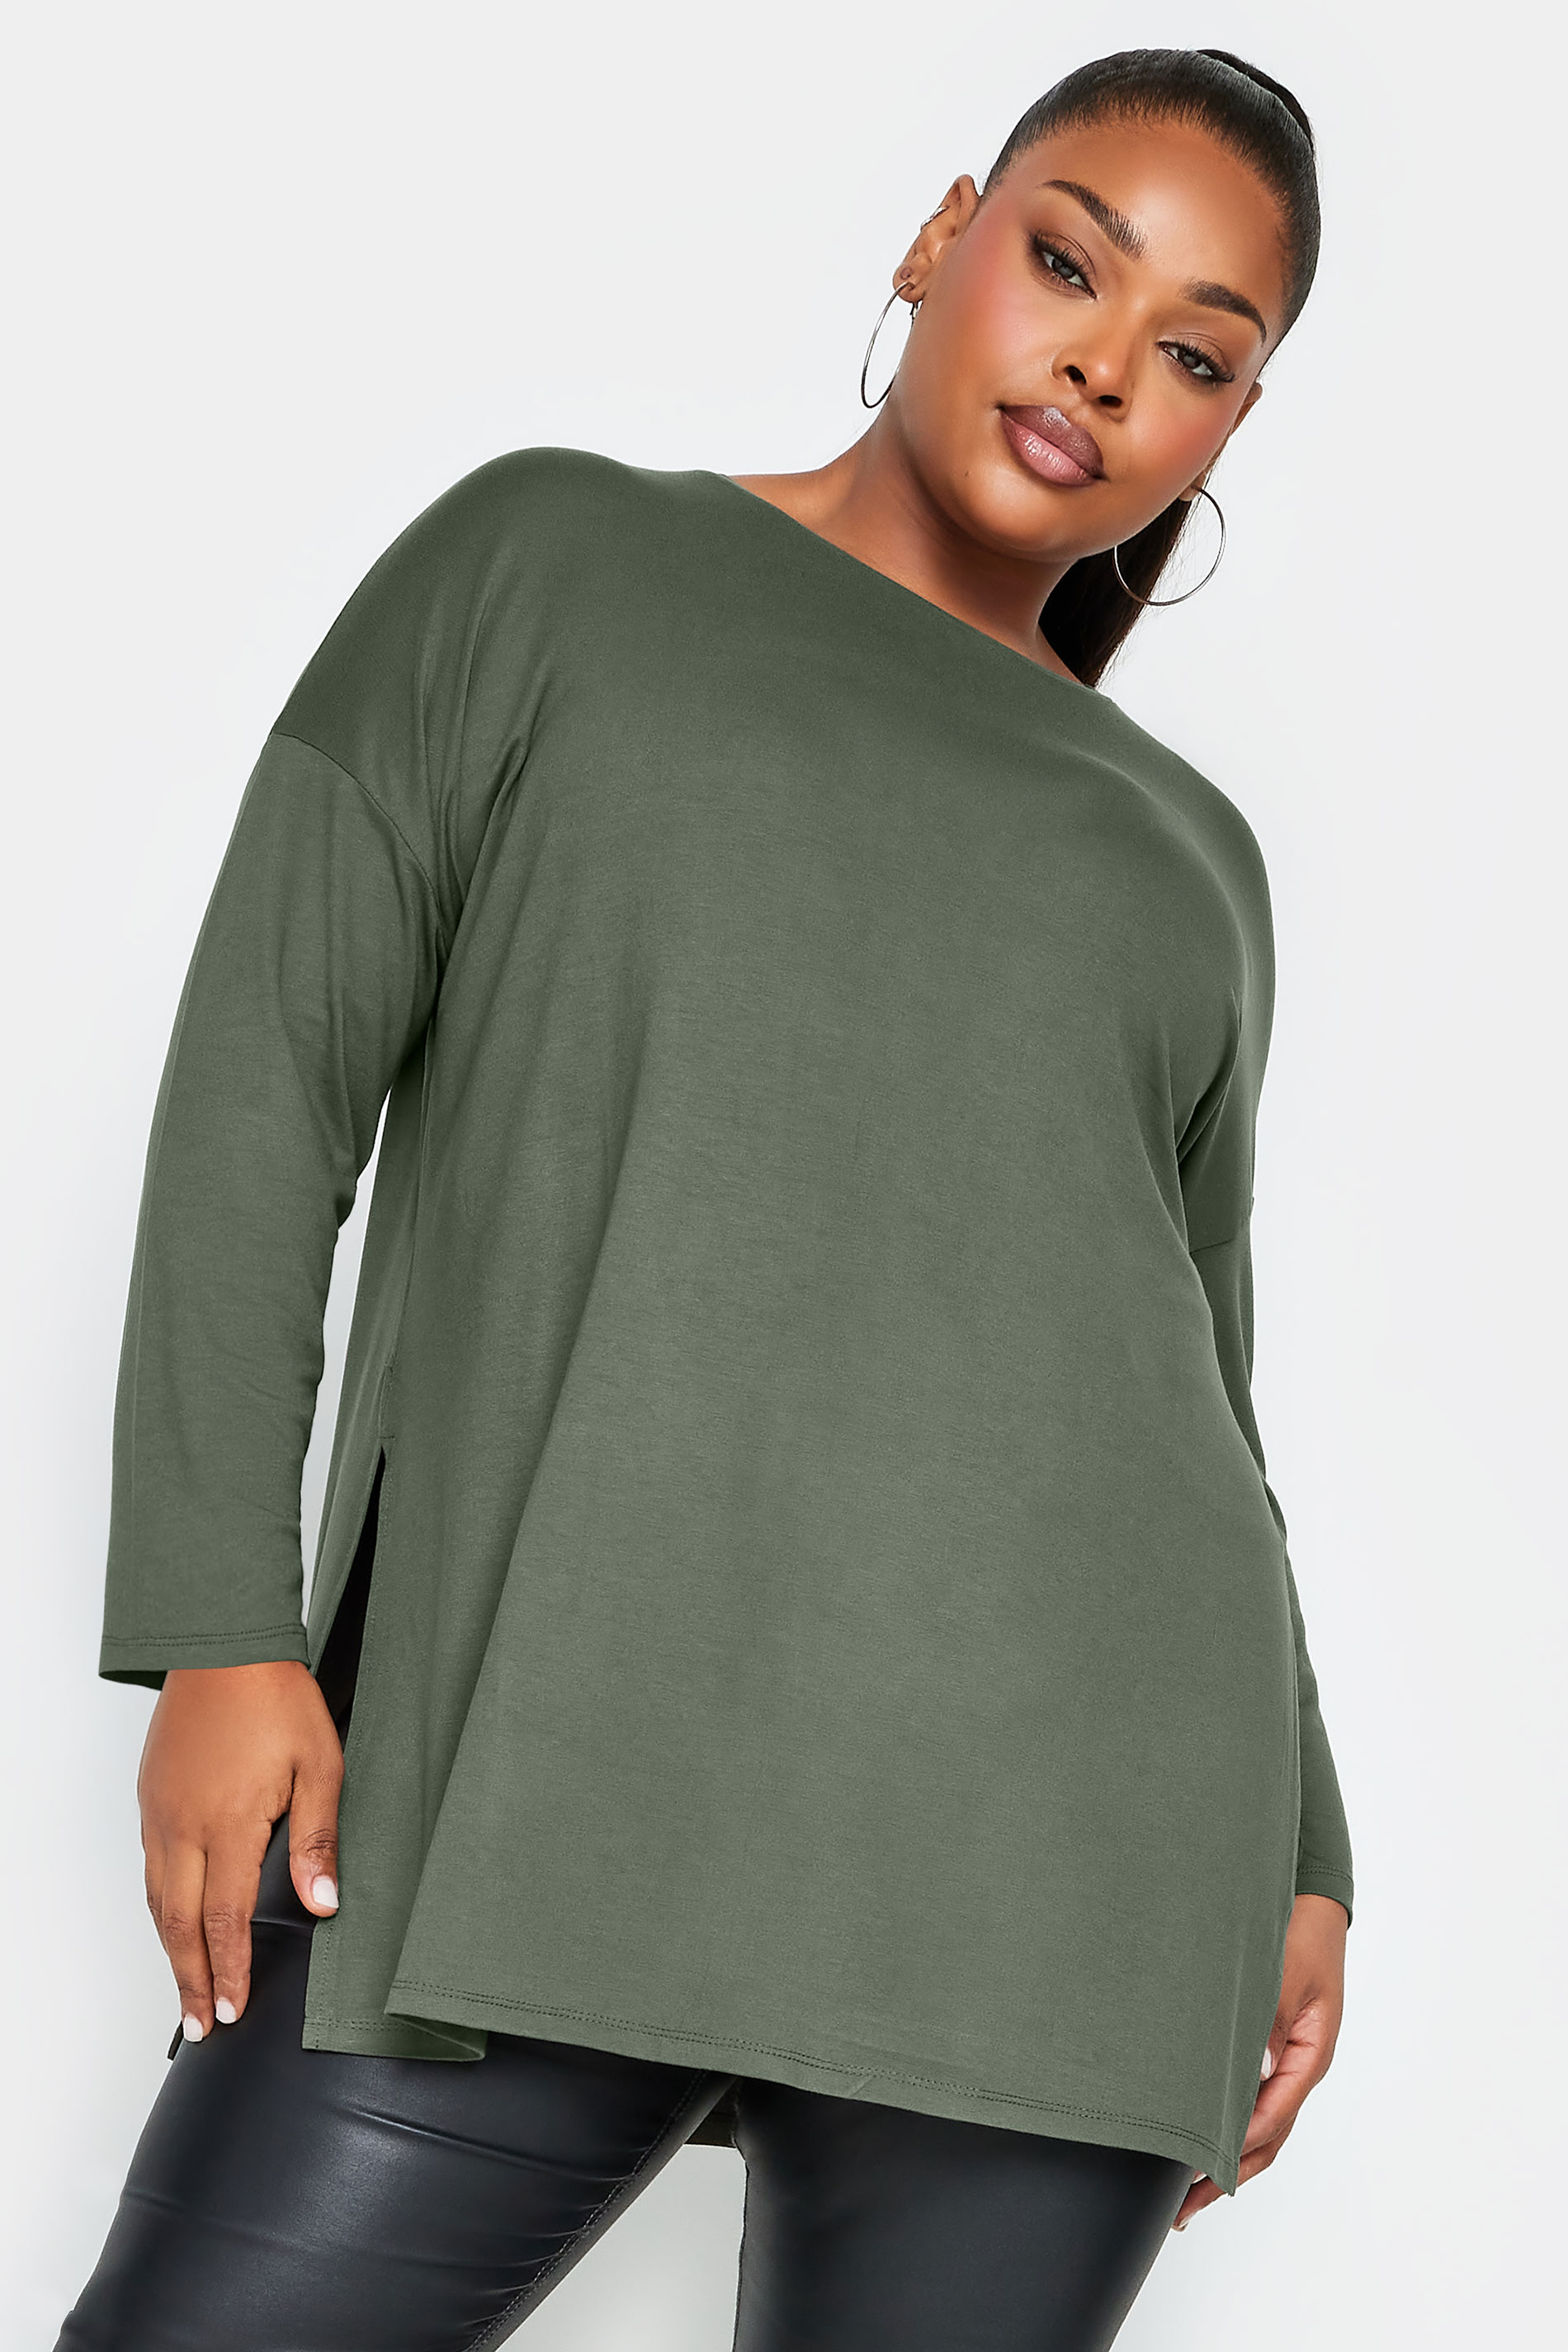 YOURS Plus Size Khaki Green Oversized Long Sleeve T-Shirt | Yours Clothing 1